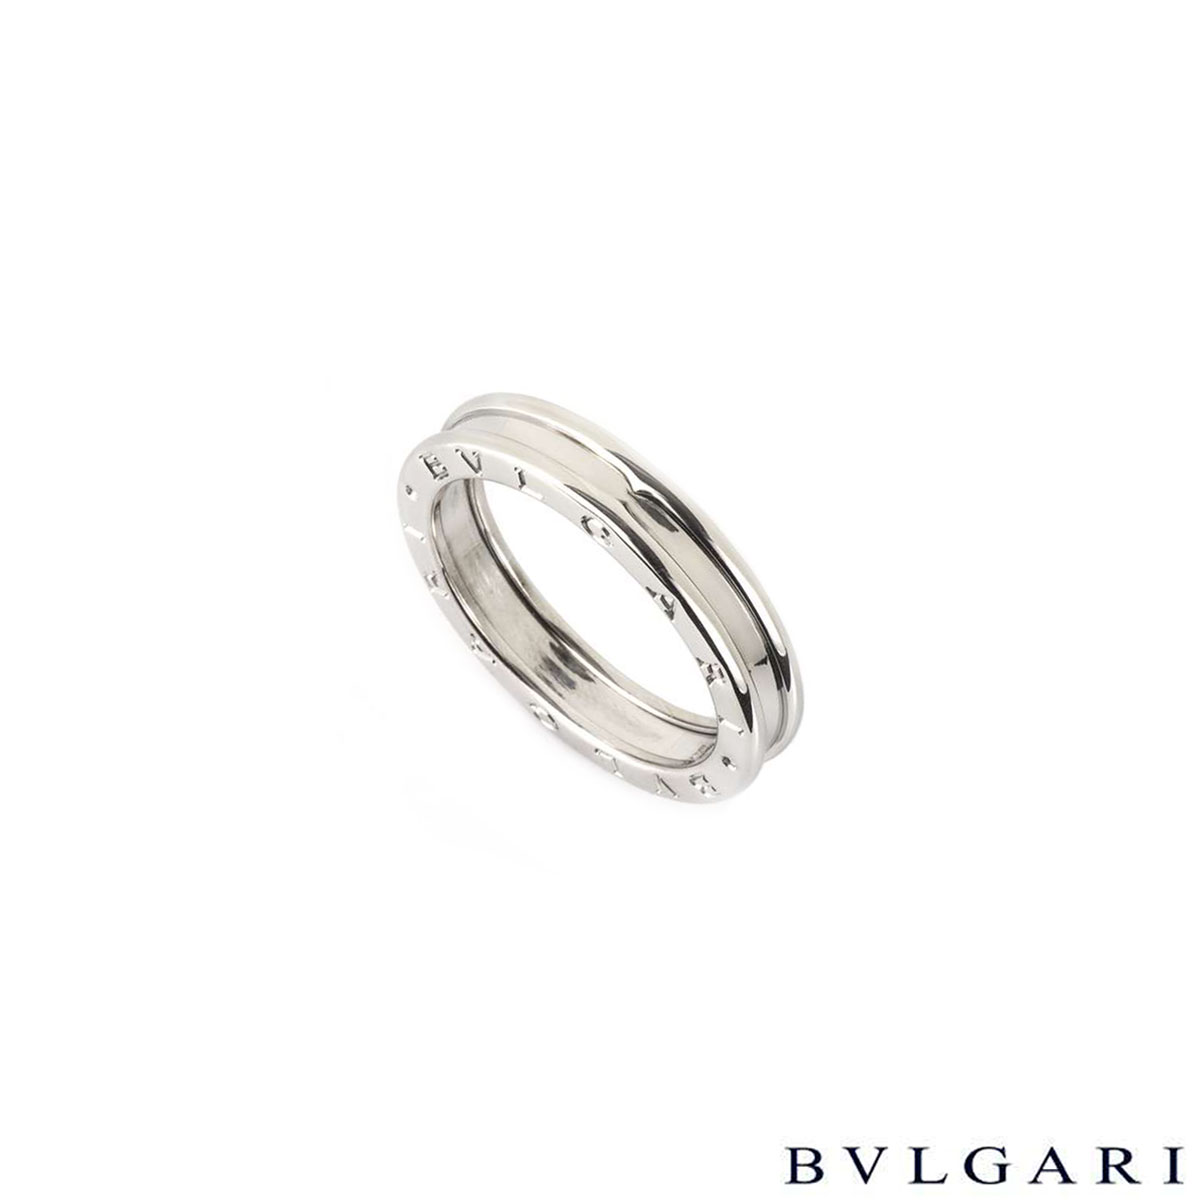 Bvlgari 18k White Gold B Zero1 Ring Size 65 An Rich Diamonds